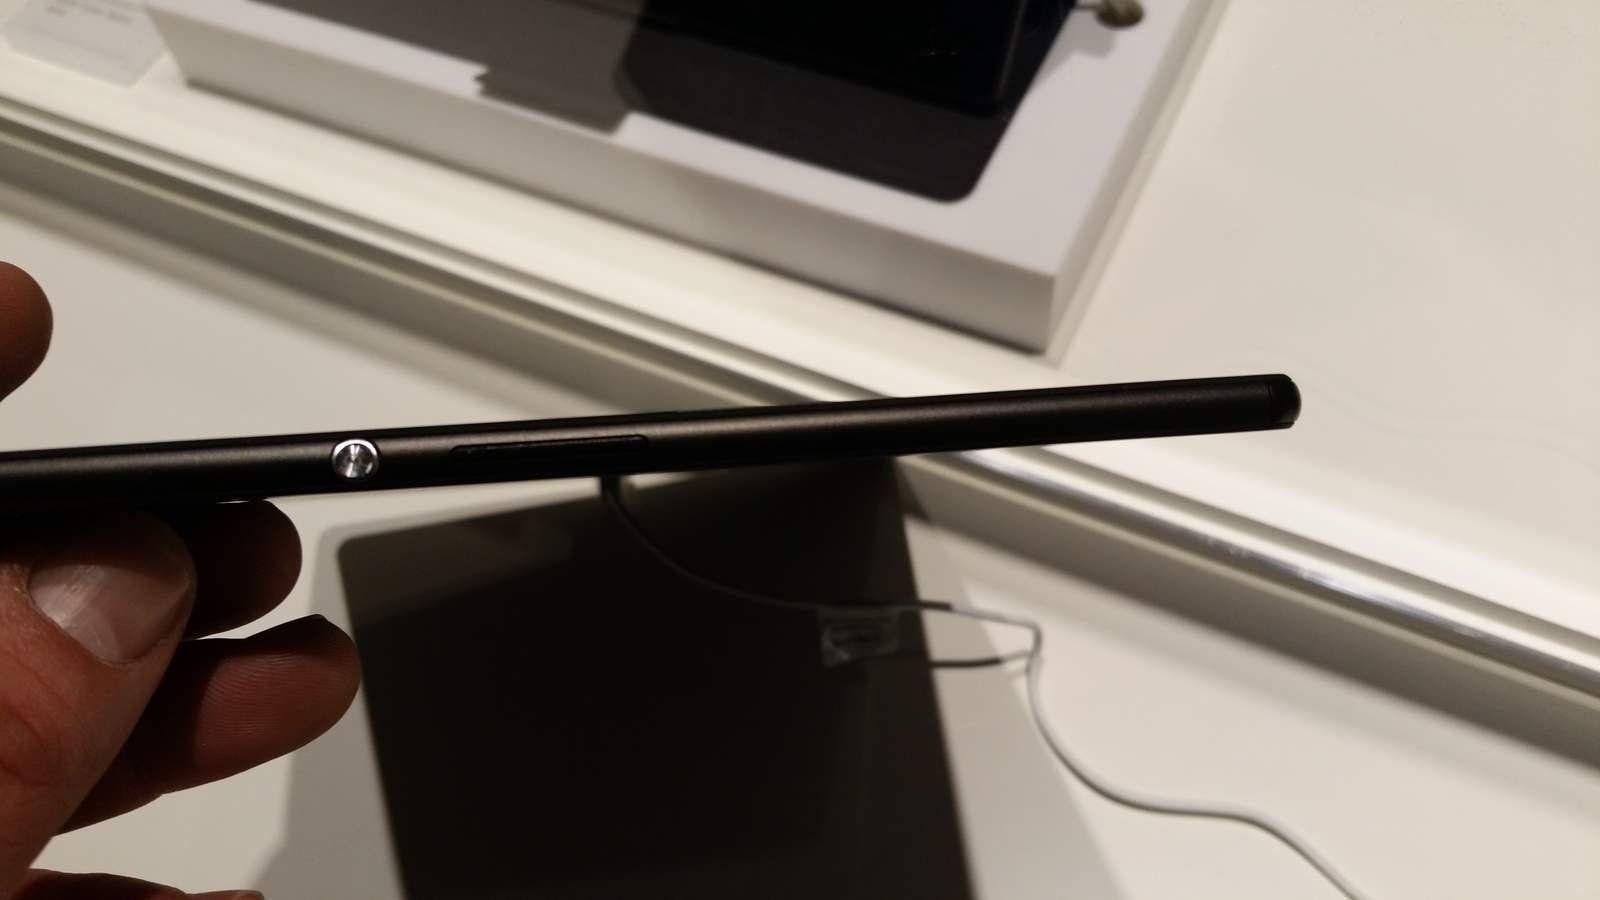 [MWC 2015] Sony dévoile la tablette Xperia Z4 9